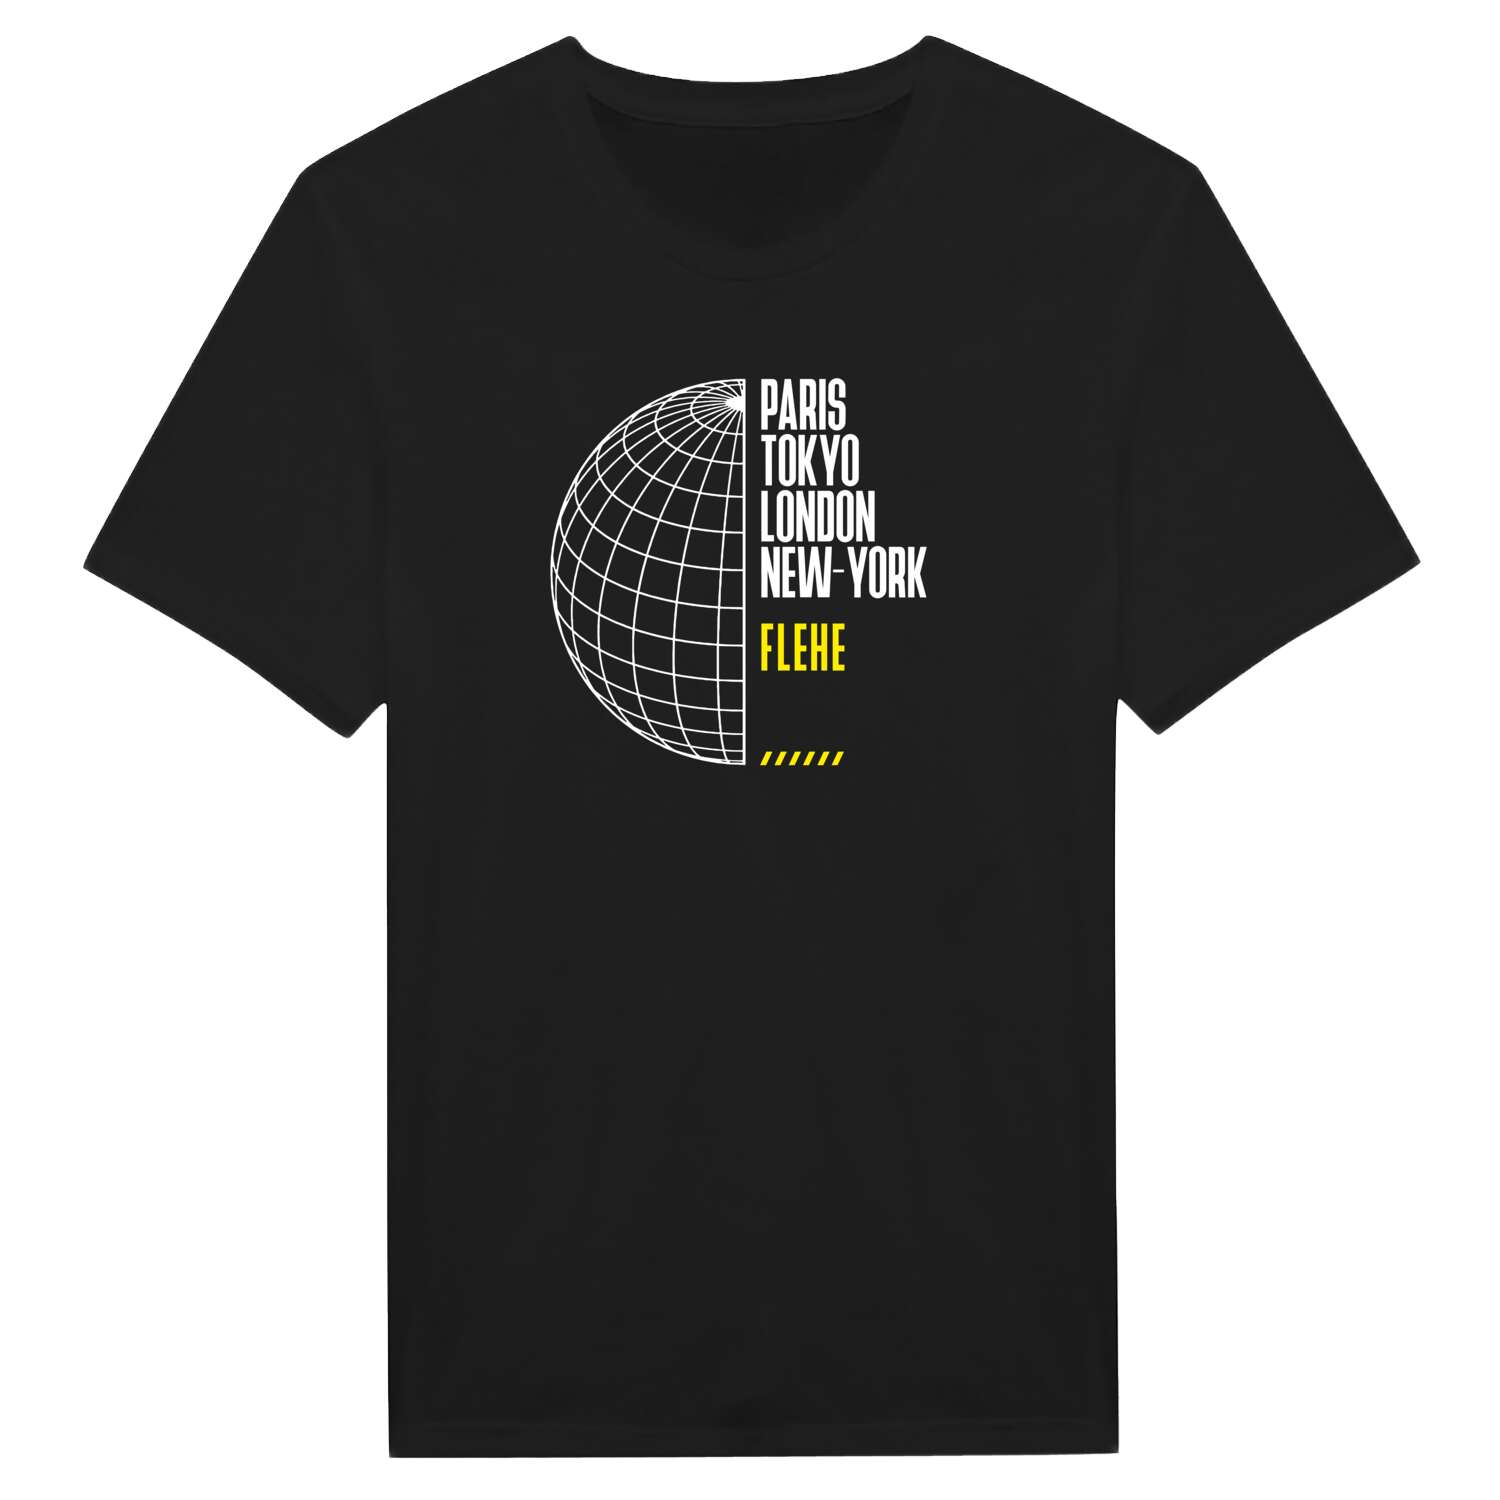 Flehe T-Shirt »Paris Tokyo London«